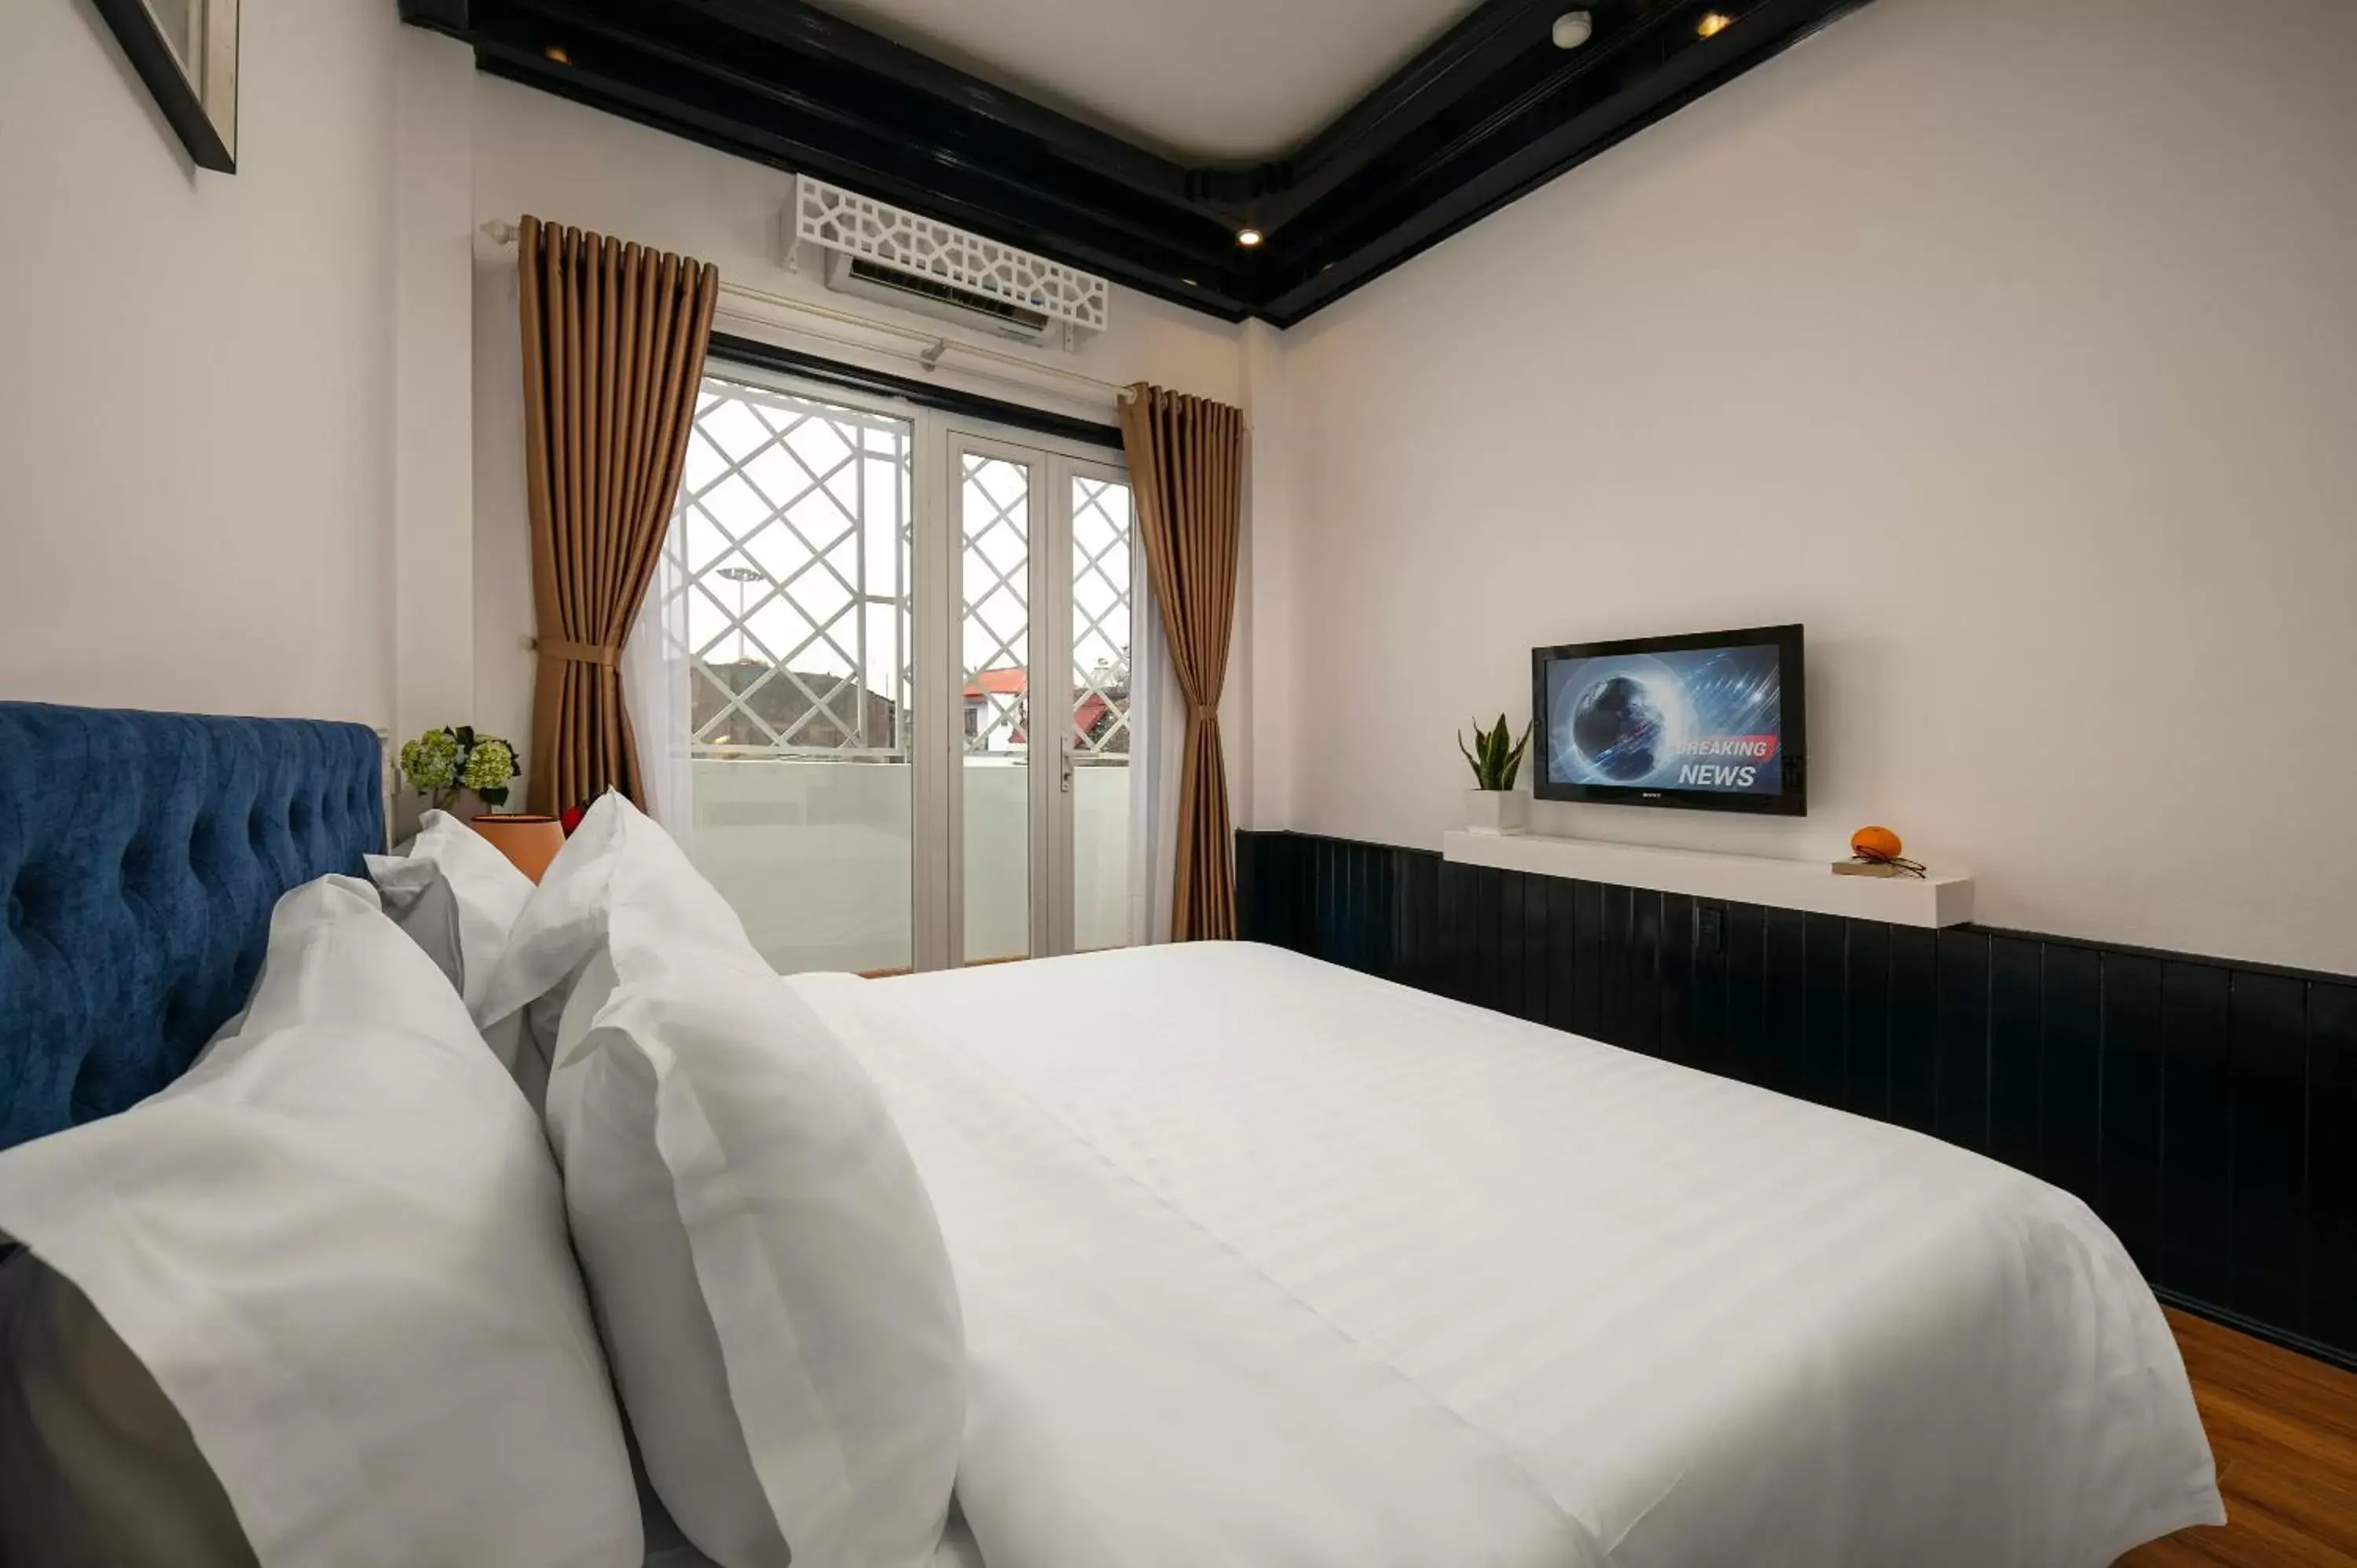 Bedroom, Bed in Diamond Nostalgia Hotel & Spa